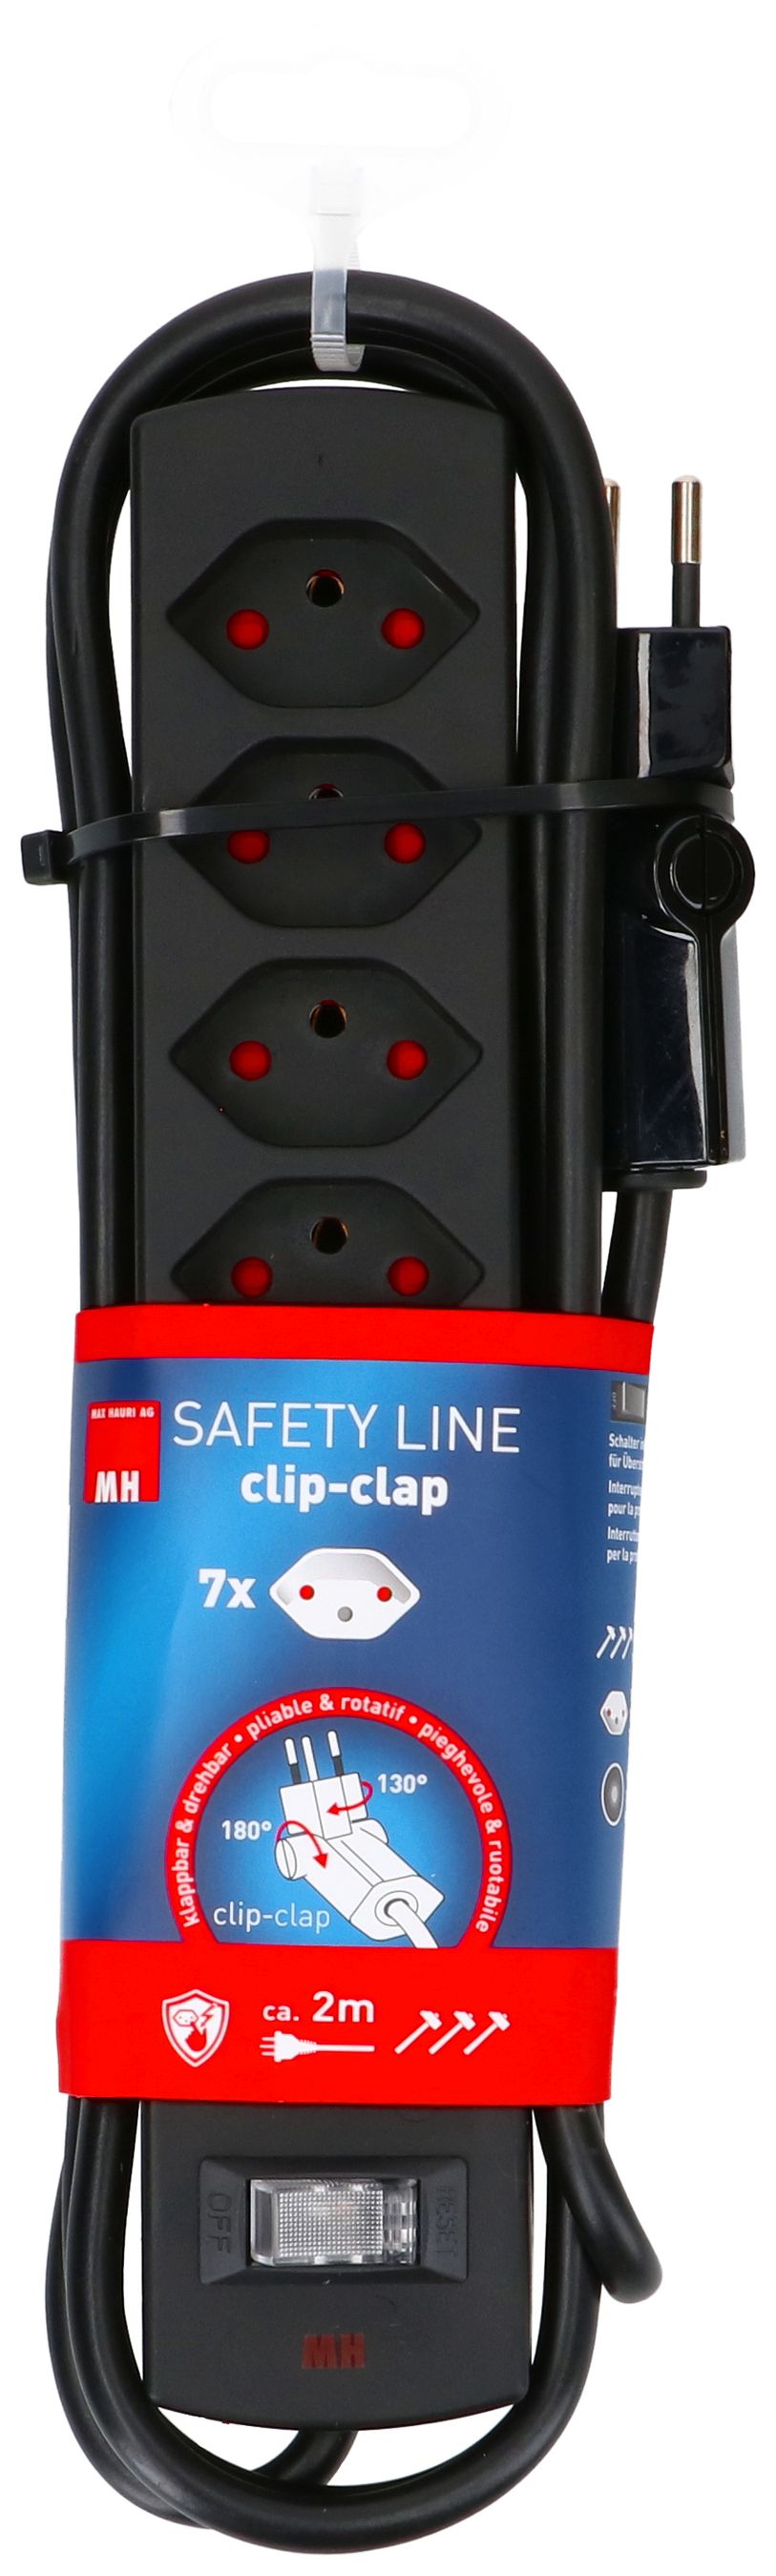 multipresa Safety Line 7x tipo 13 BS nero interruttore 2m cli.